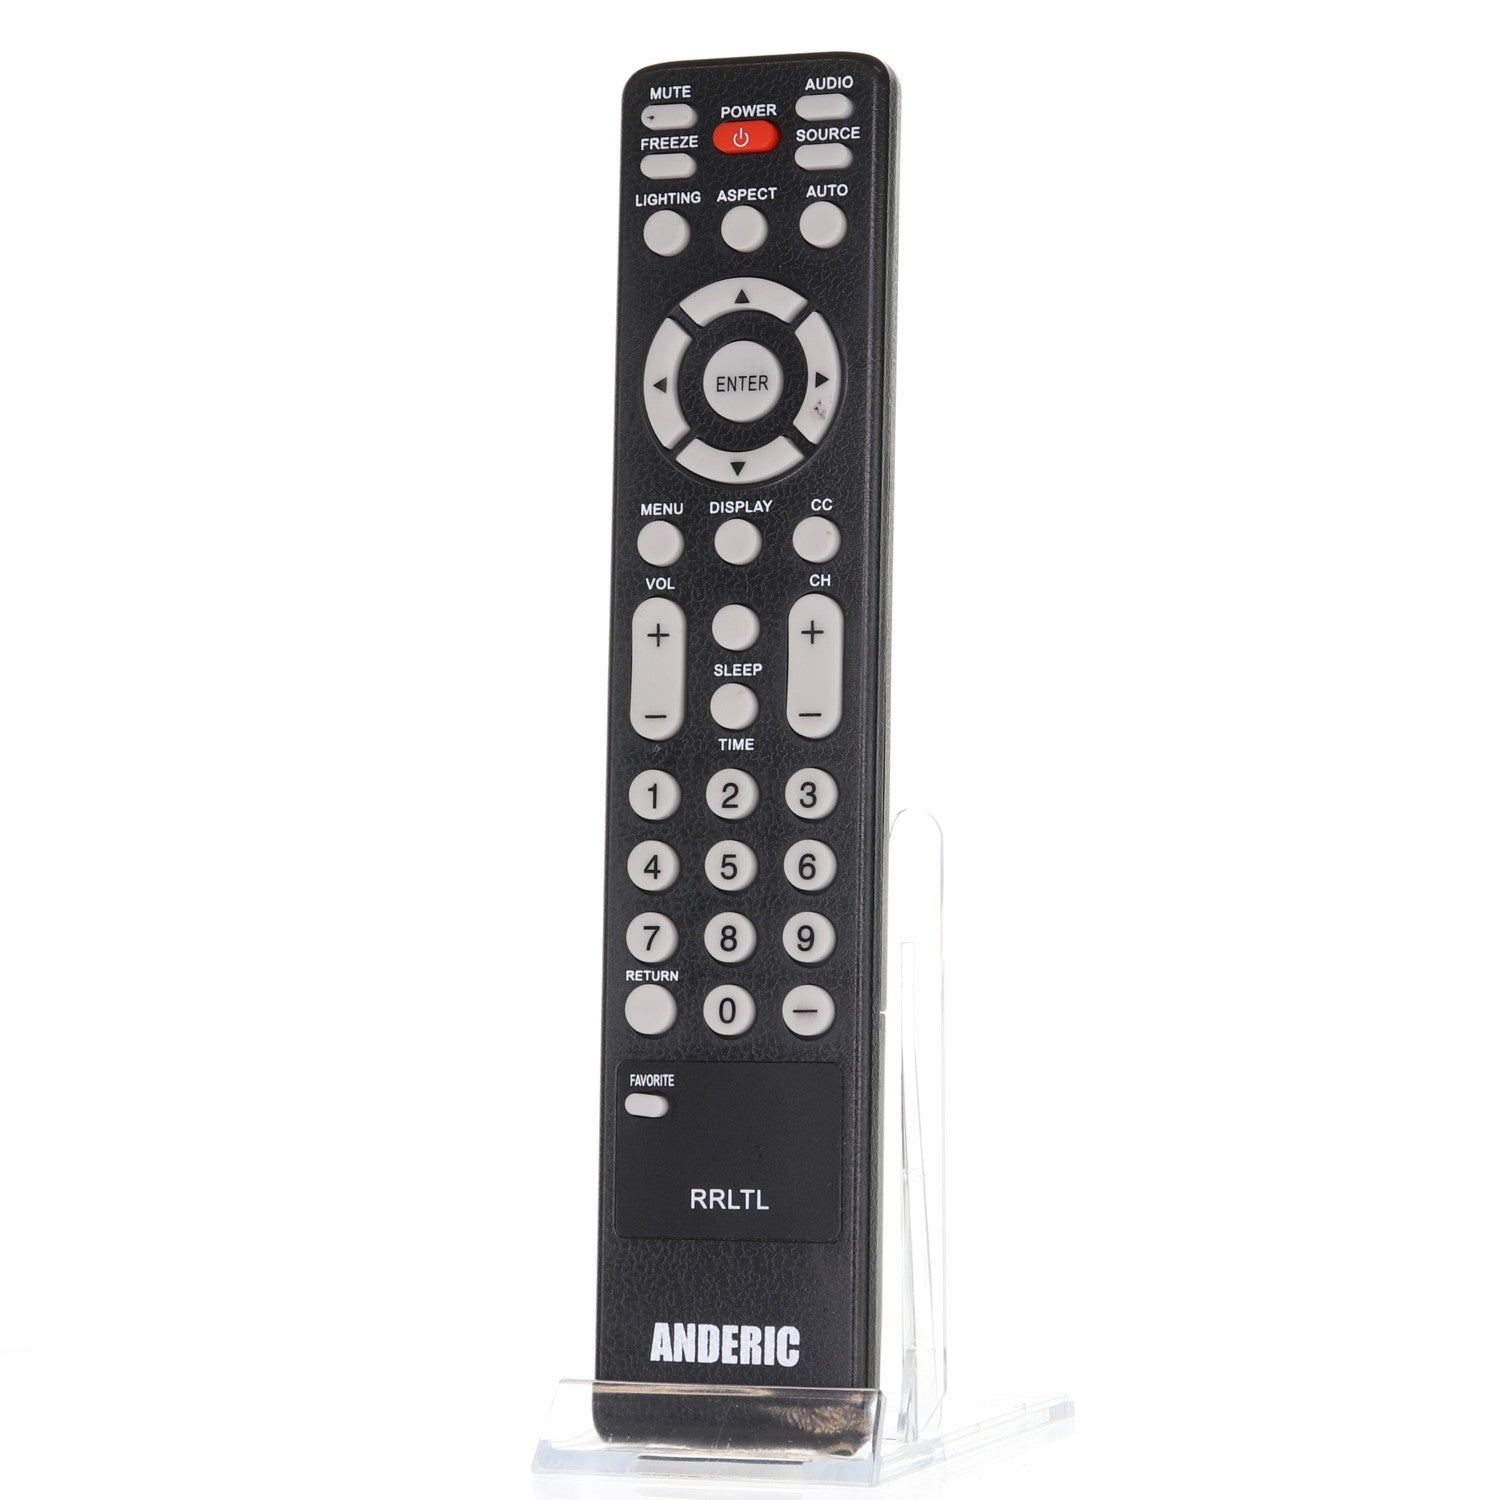 RRLTL Remote Control for Olevia® TVs